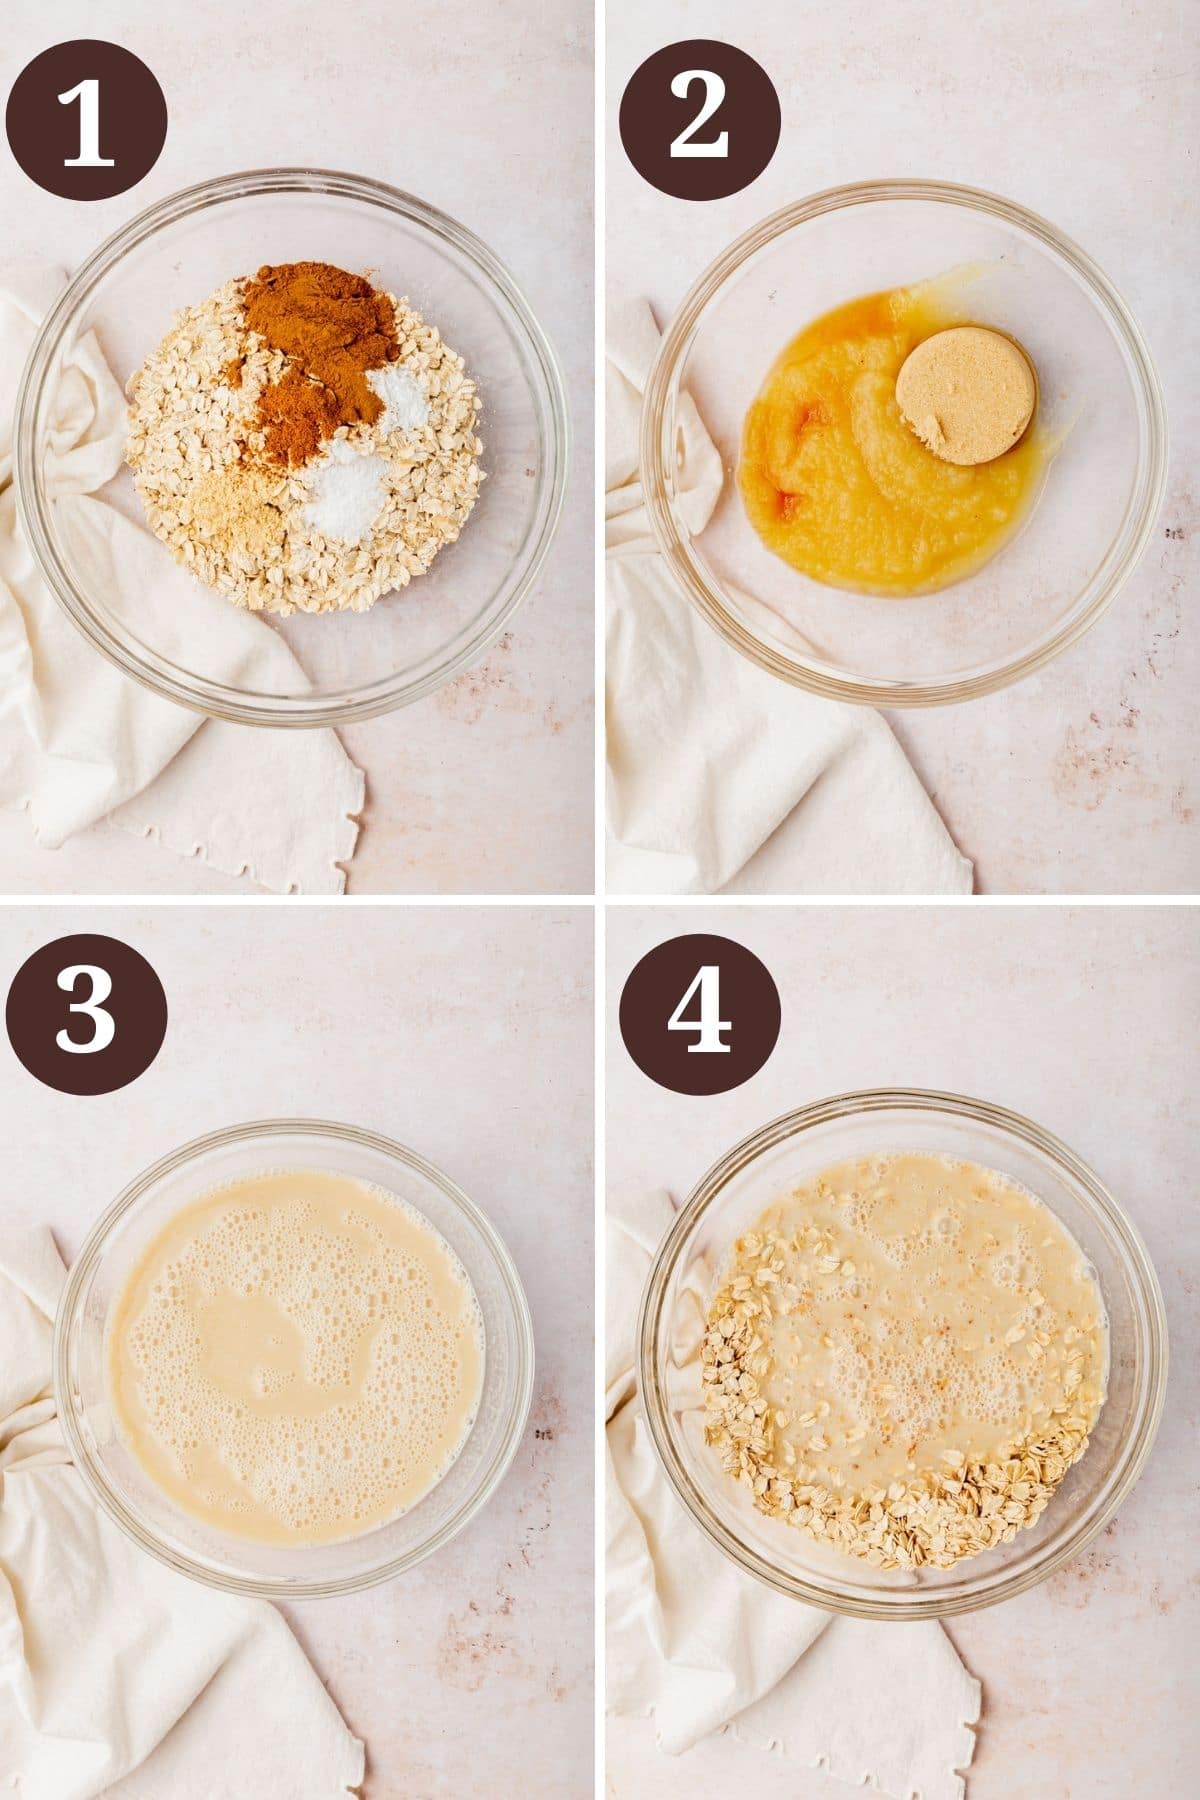 Steps 1-4 for making gluten-free vegan apple baked oatmeal.